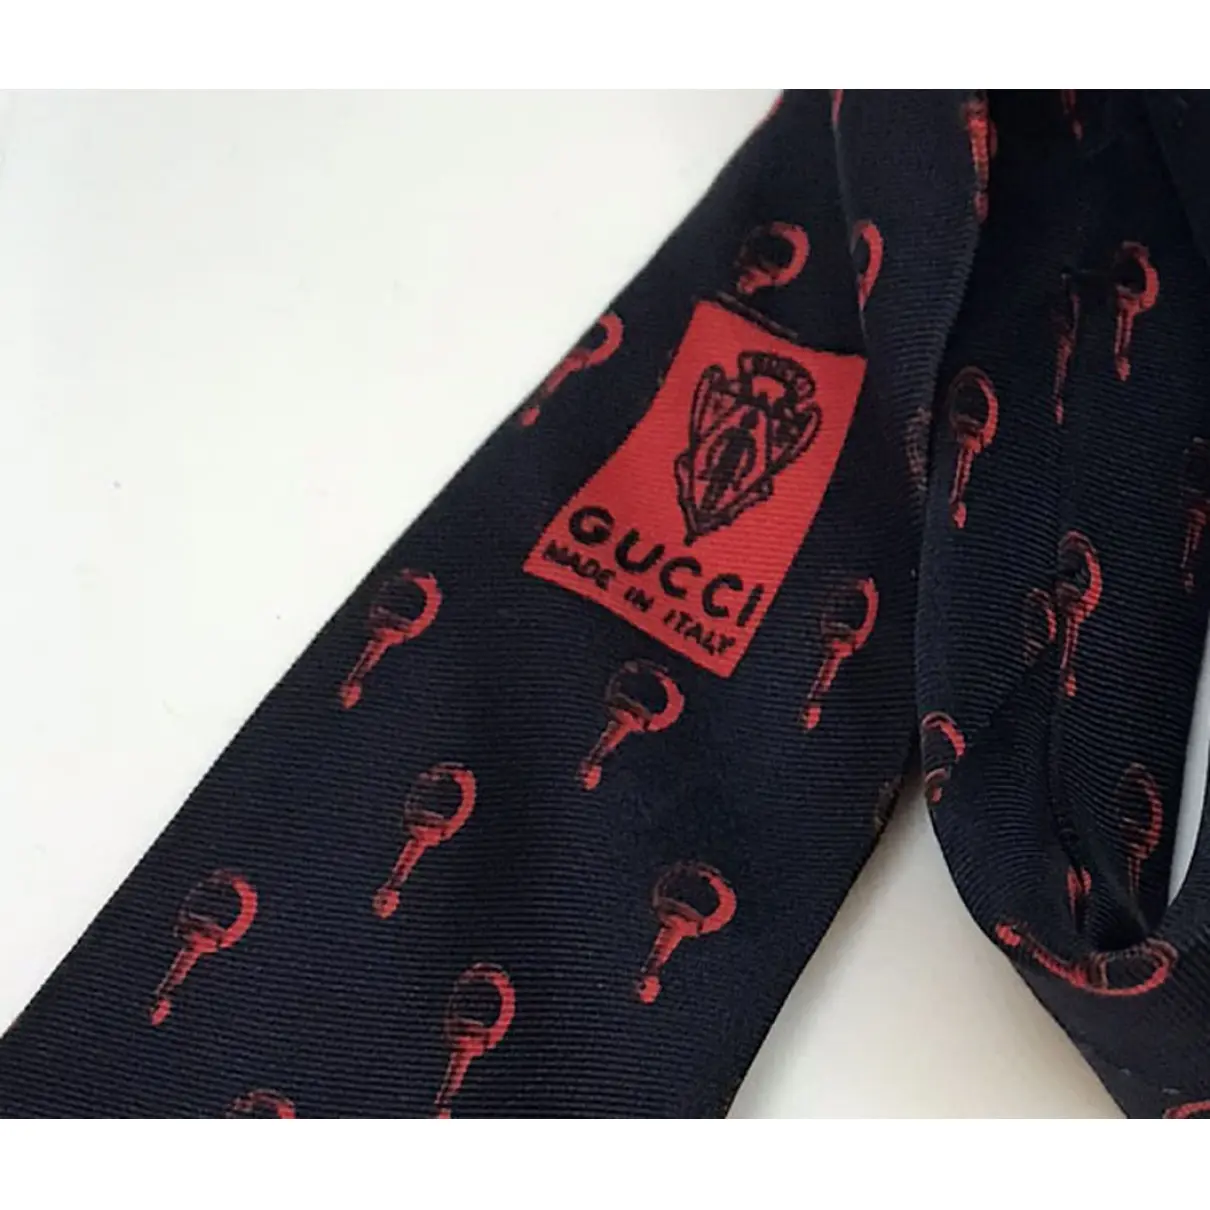 Buy Gucci Silk tie online - Vintage